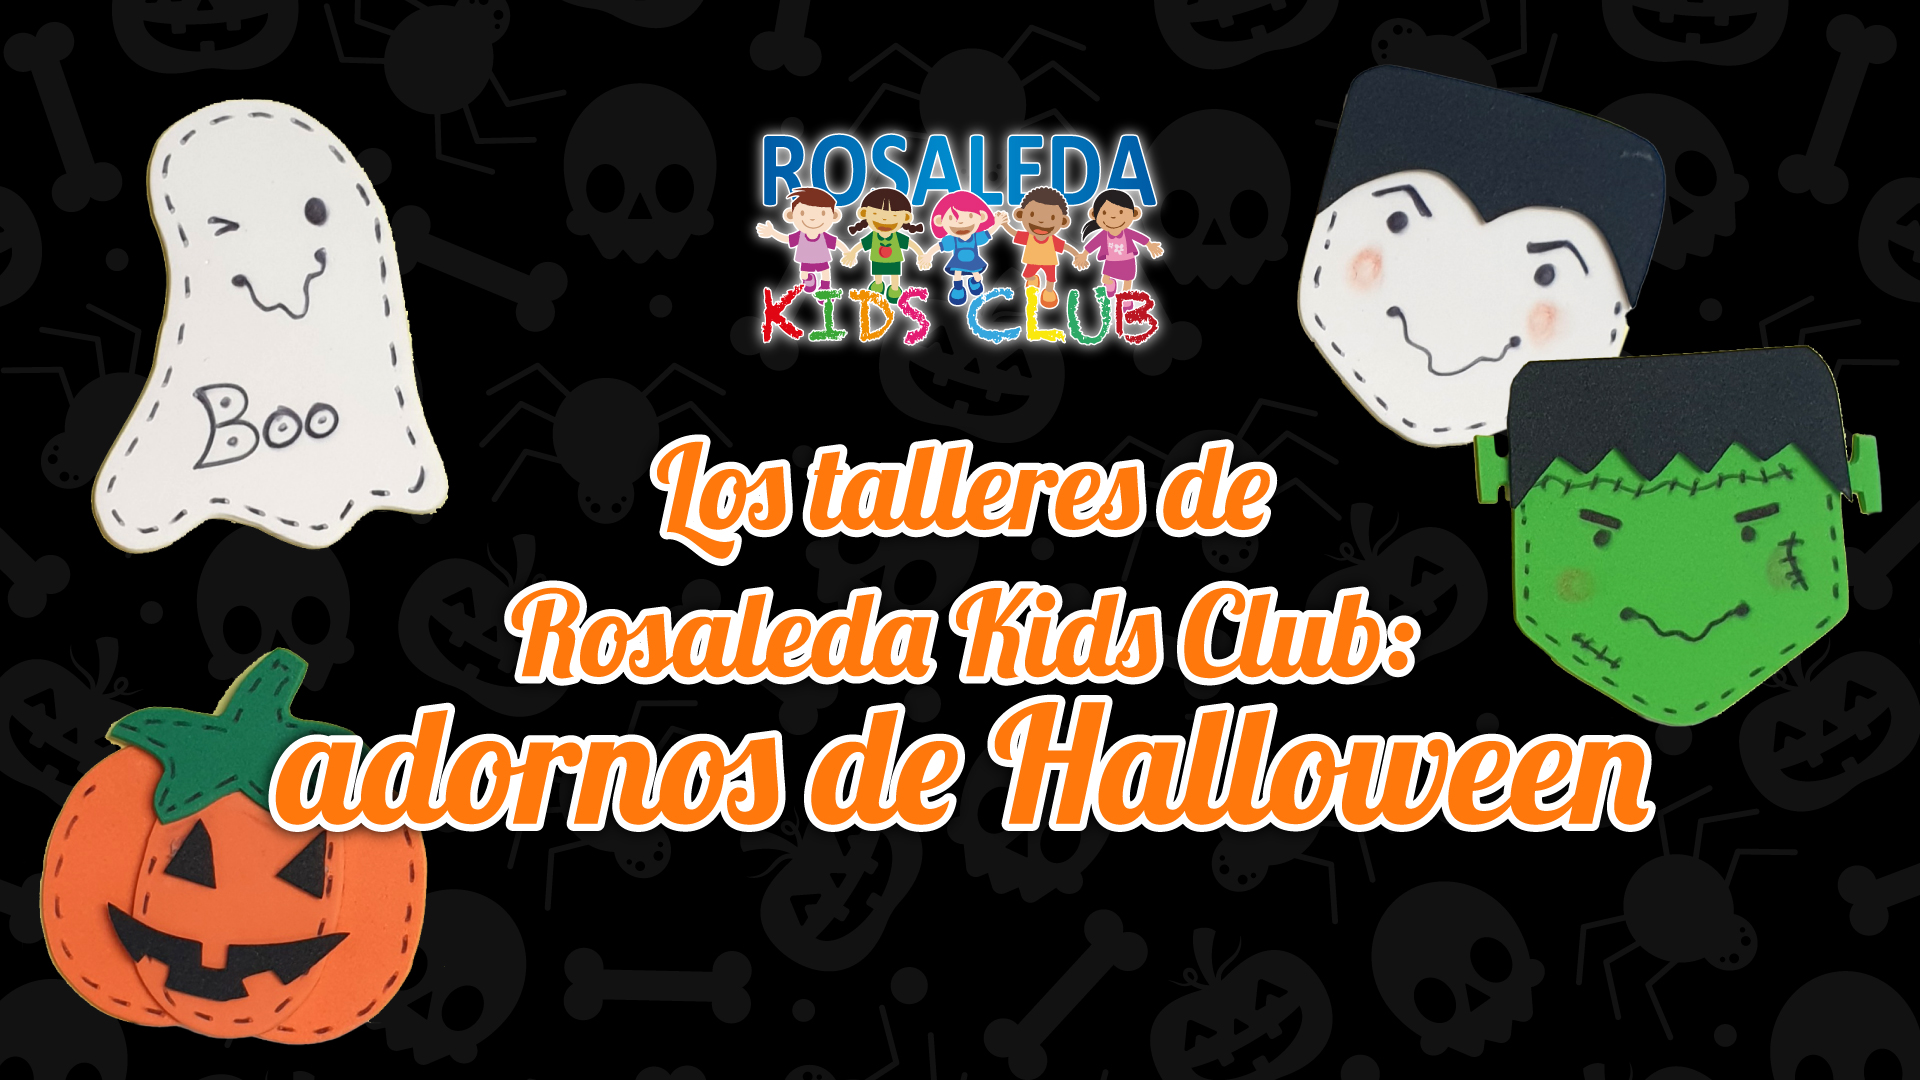 Los talleres de Rosaleda Kids Club: adornos de Halloween